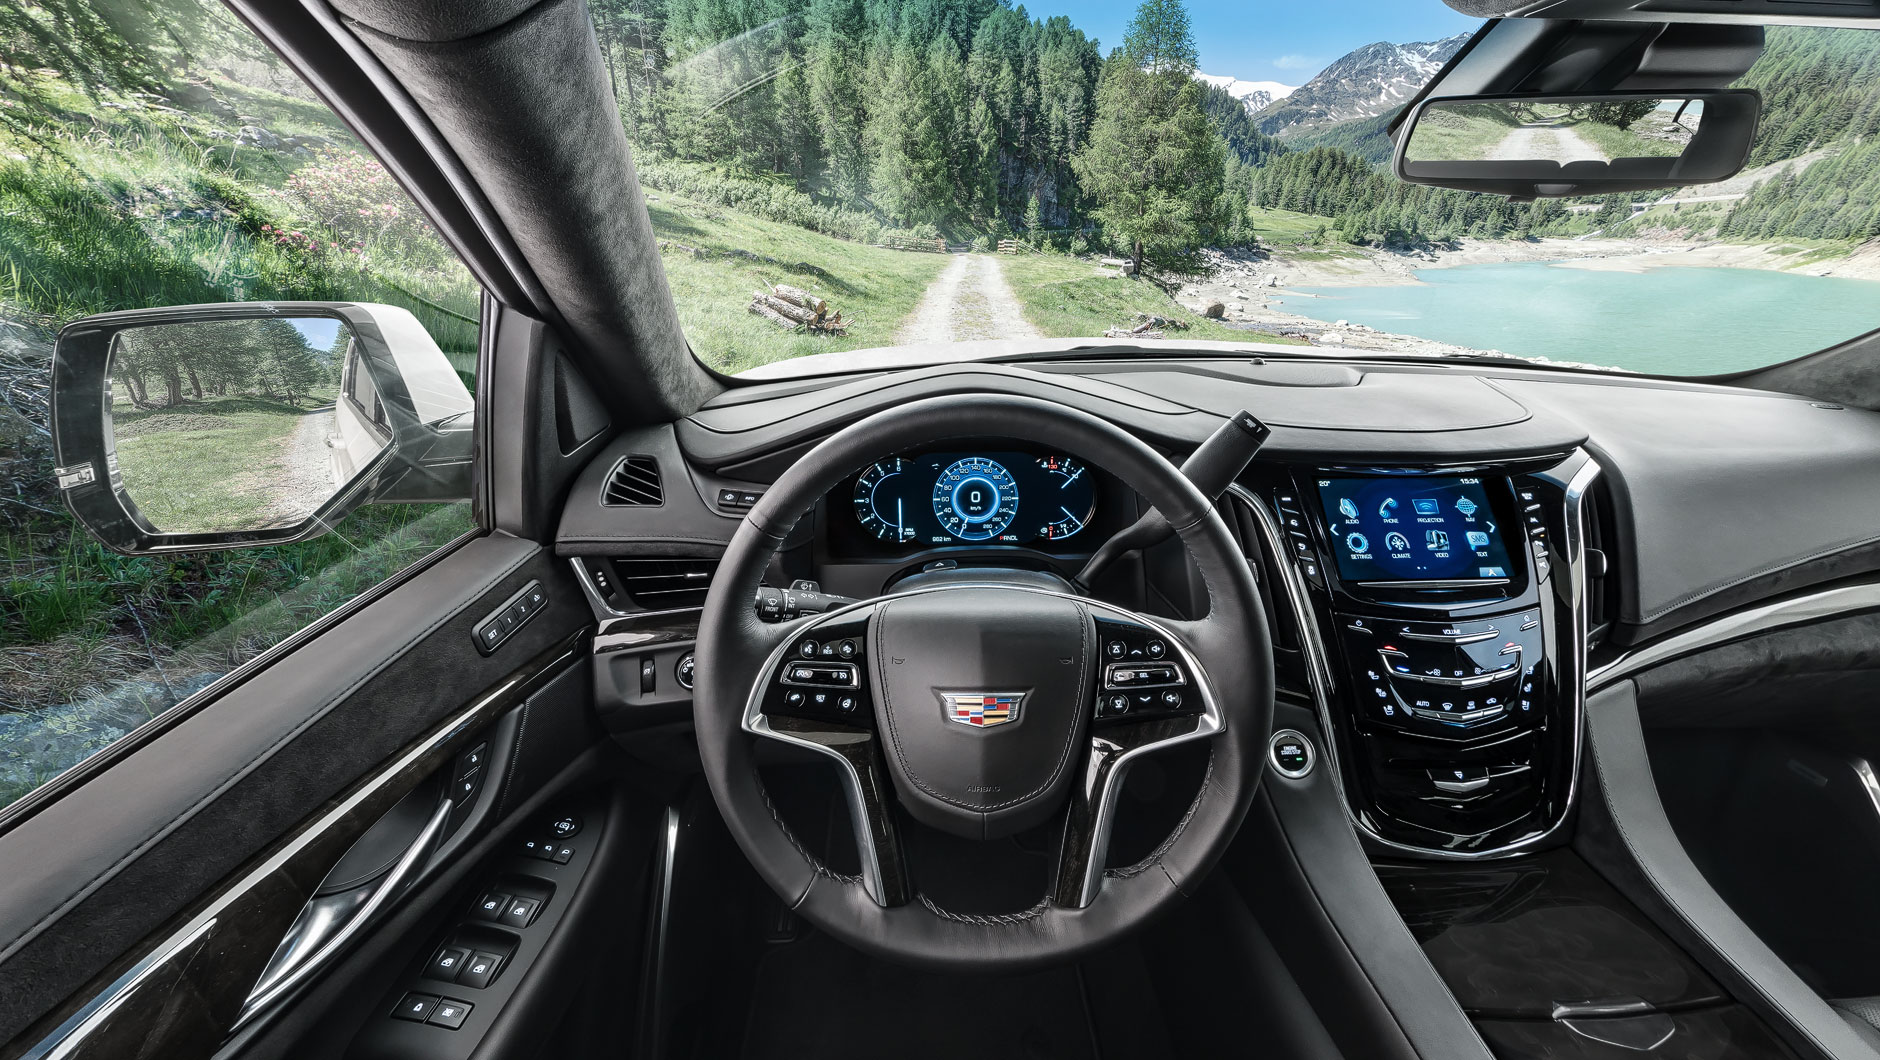 Autoinnenraum / Interior eines Cadillac Escalade. Foto aufgenommen aus der Fahrerperspektive. Der Geländewagen fährt auf einer schmalen Schotterstraße in den Alpen von Italien.